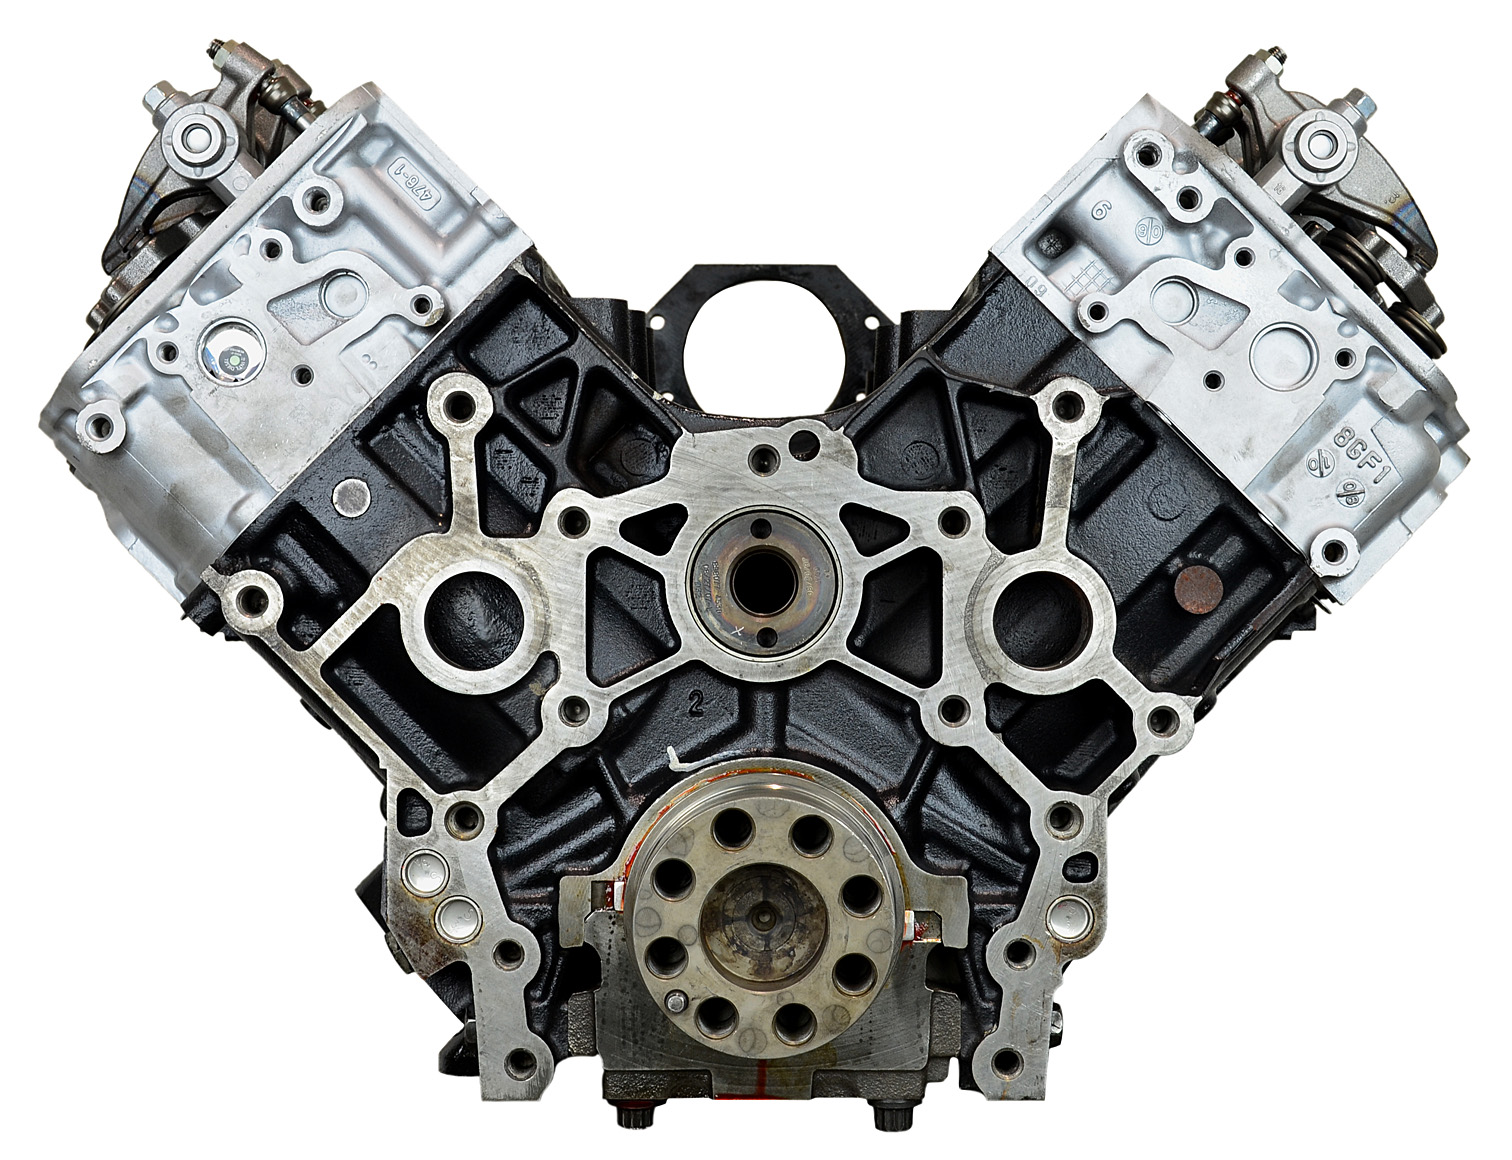 Chevy 6.6L Duramax LBZ V8 Remanufactured Engine - 2006-2007